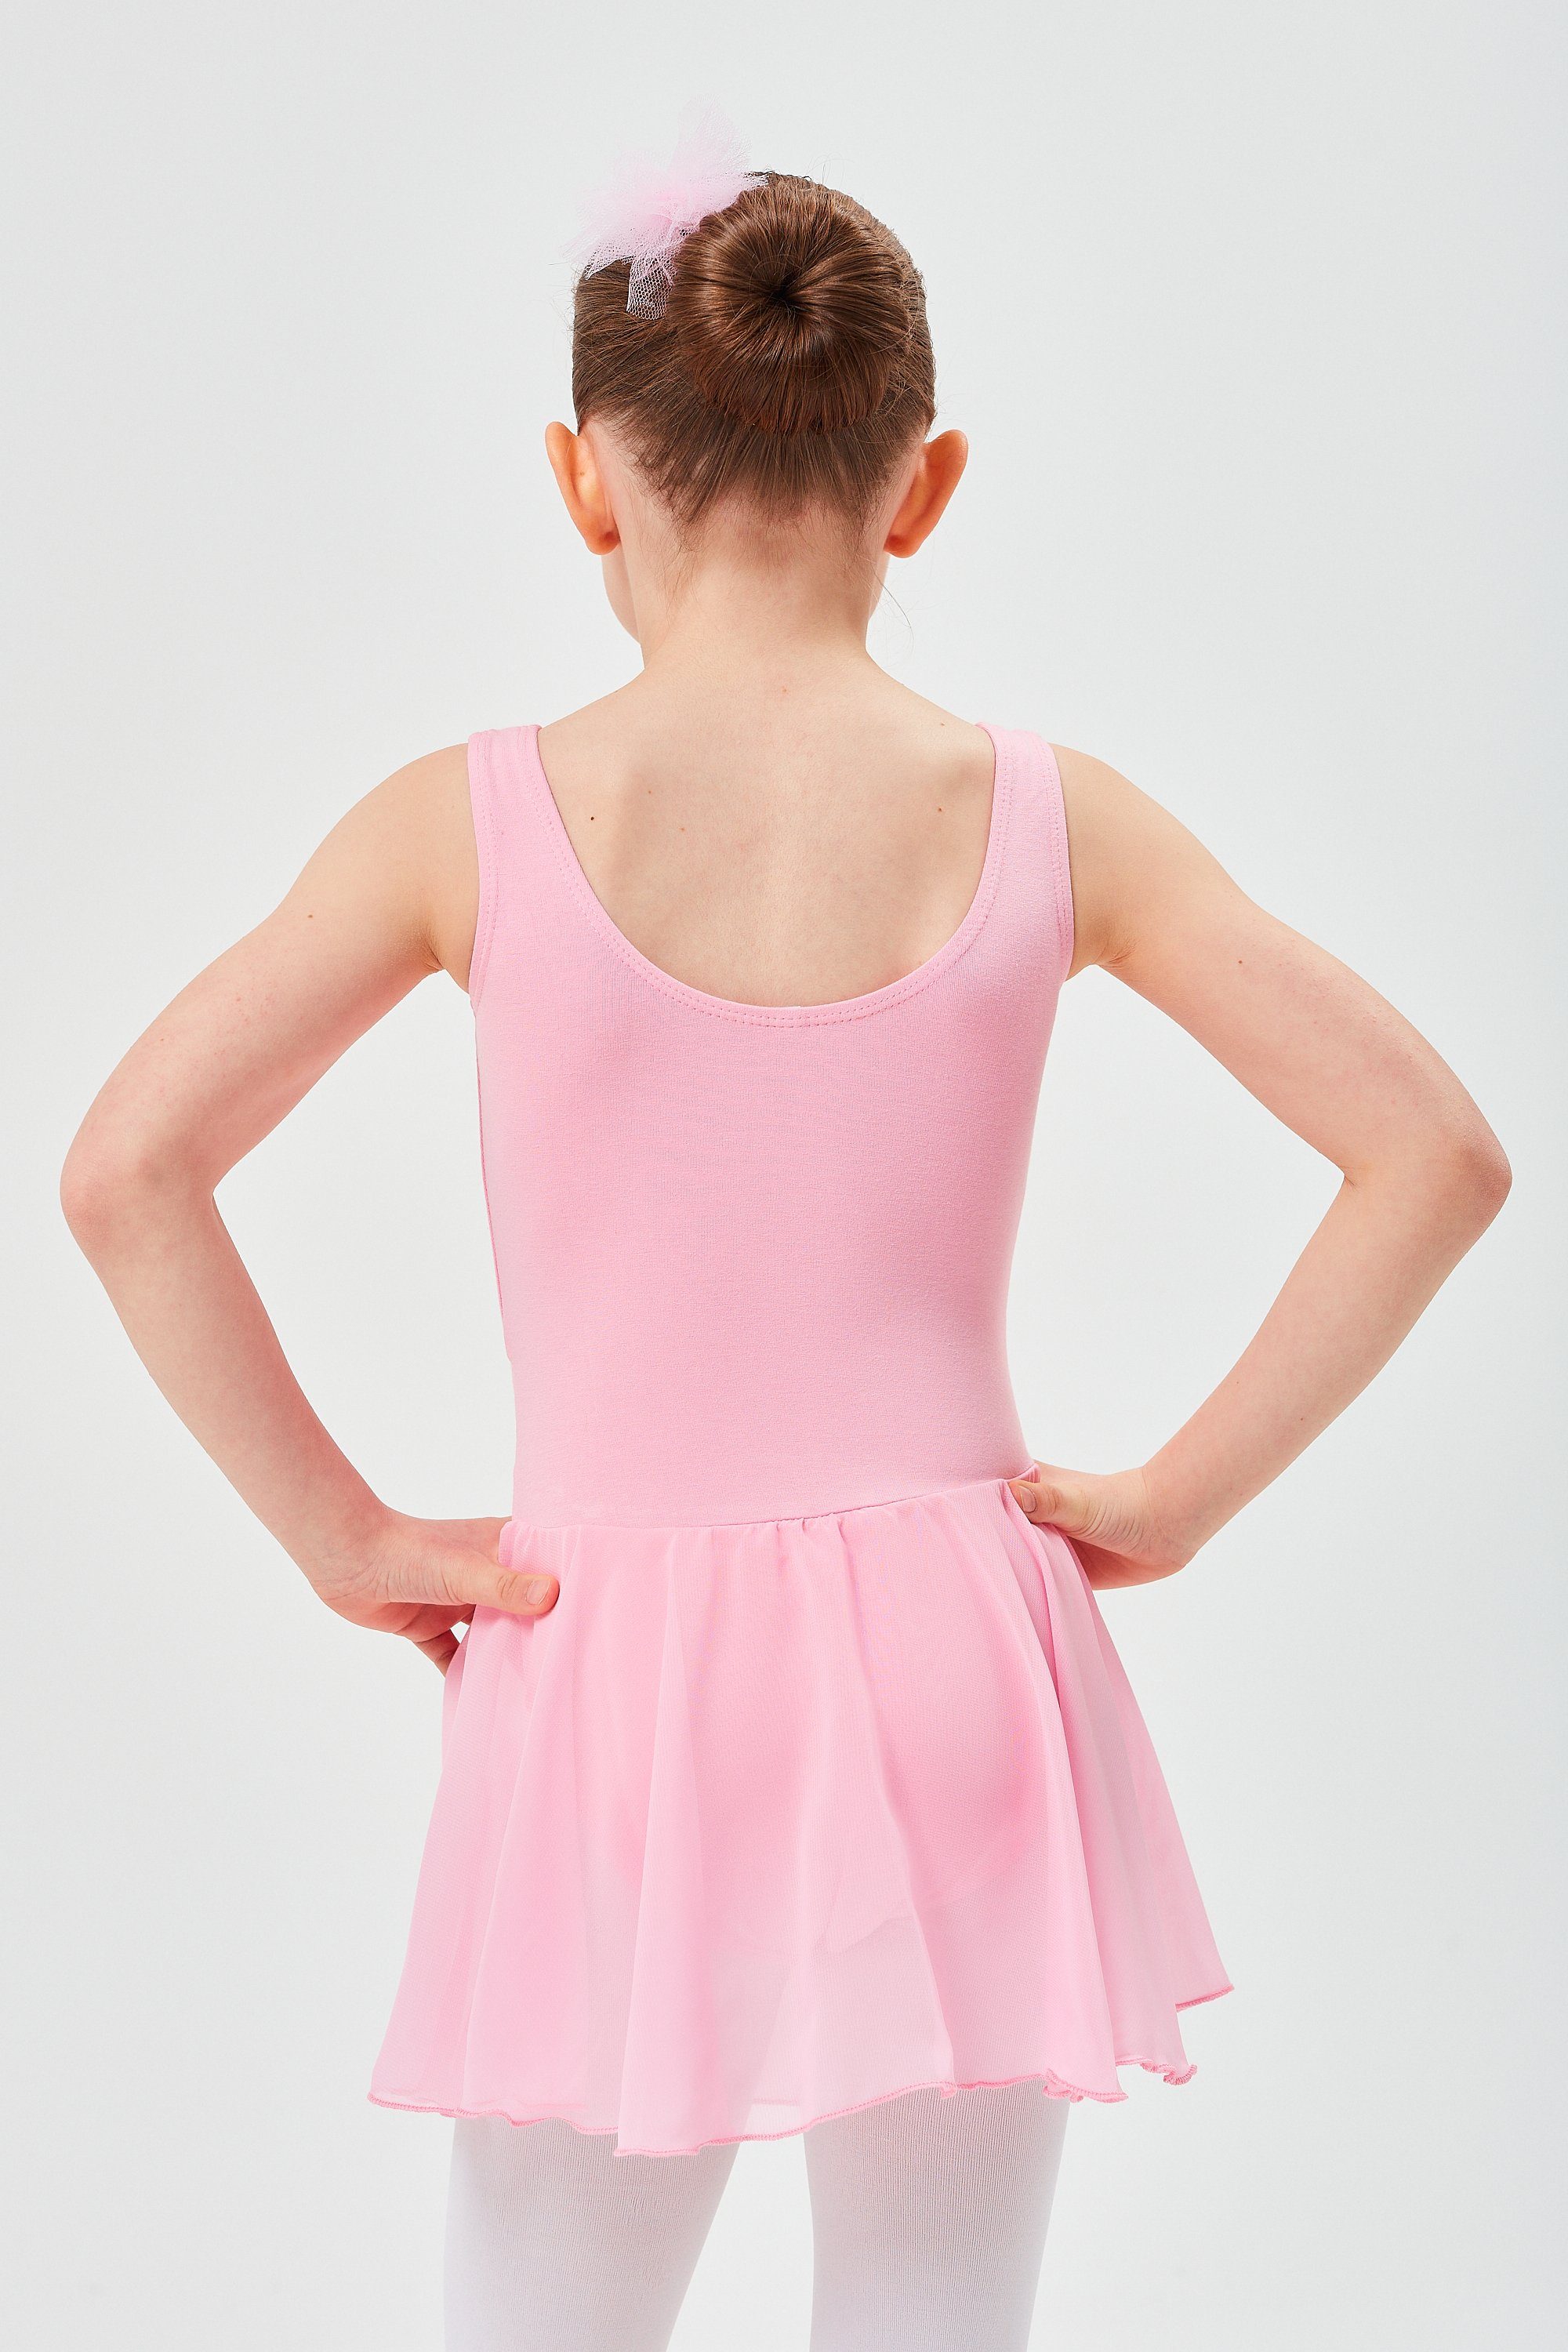 wunderbar Chiffon tanzmuster Minnie mit Ballett aus Mädchen Röckchen rosa weichem Trikot Ballettkleid für Chiffonkleid Baumwollmaterial